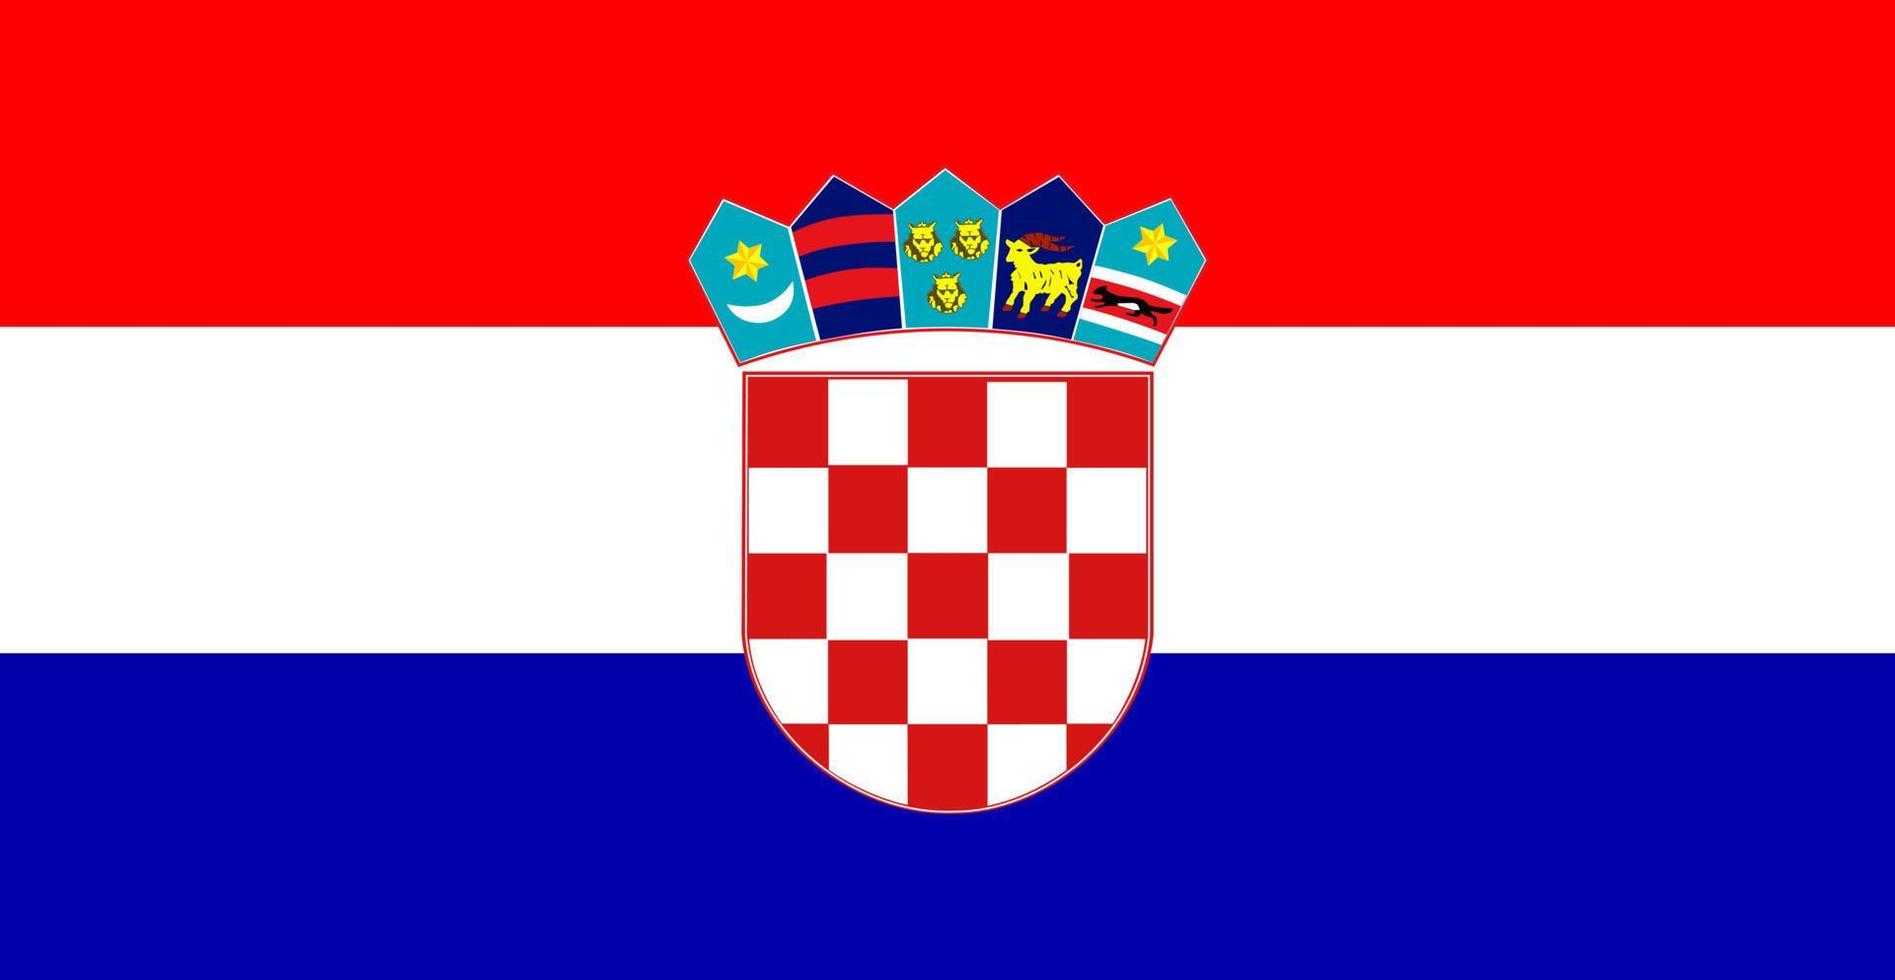 kleur geïsoleerde vectorillustratie van de vlag van kroatië vector